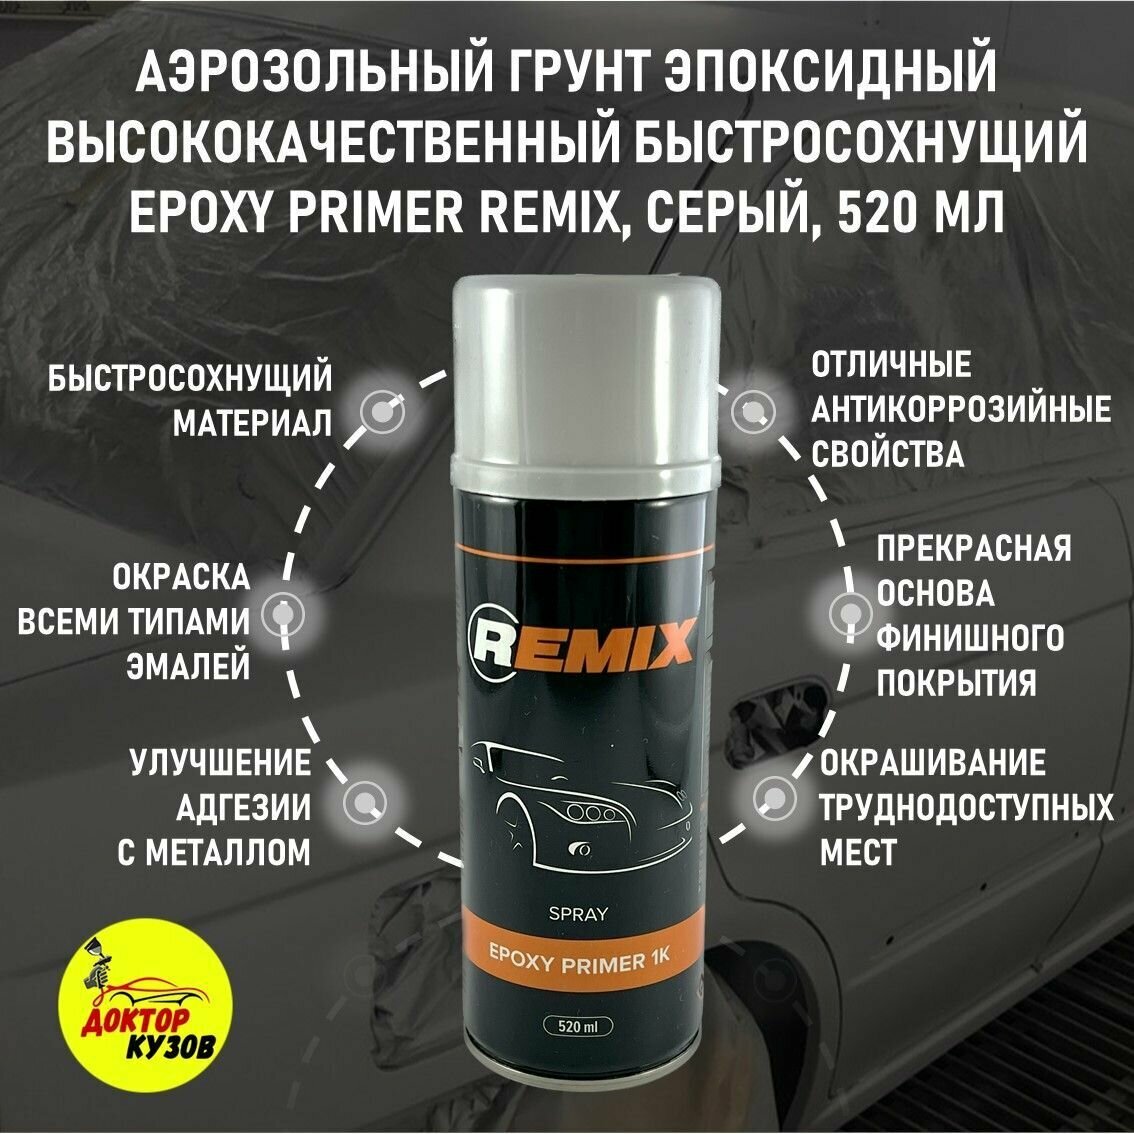 Аэрозольный эпоксидный грунт быстросохнущий для авто EPOXY PRIMER REMIX, 520 мл / Грунтовка (адгезионная) автомобильная REMIX EPOXY PRIMER